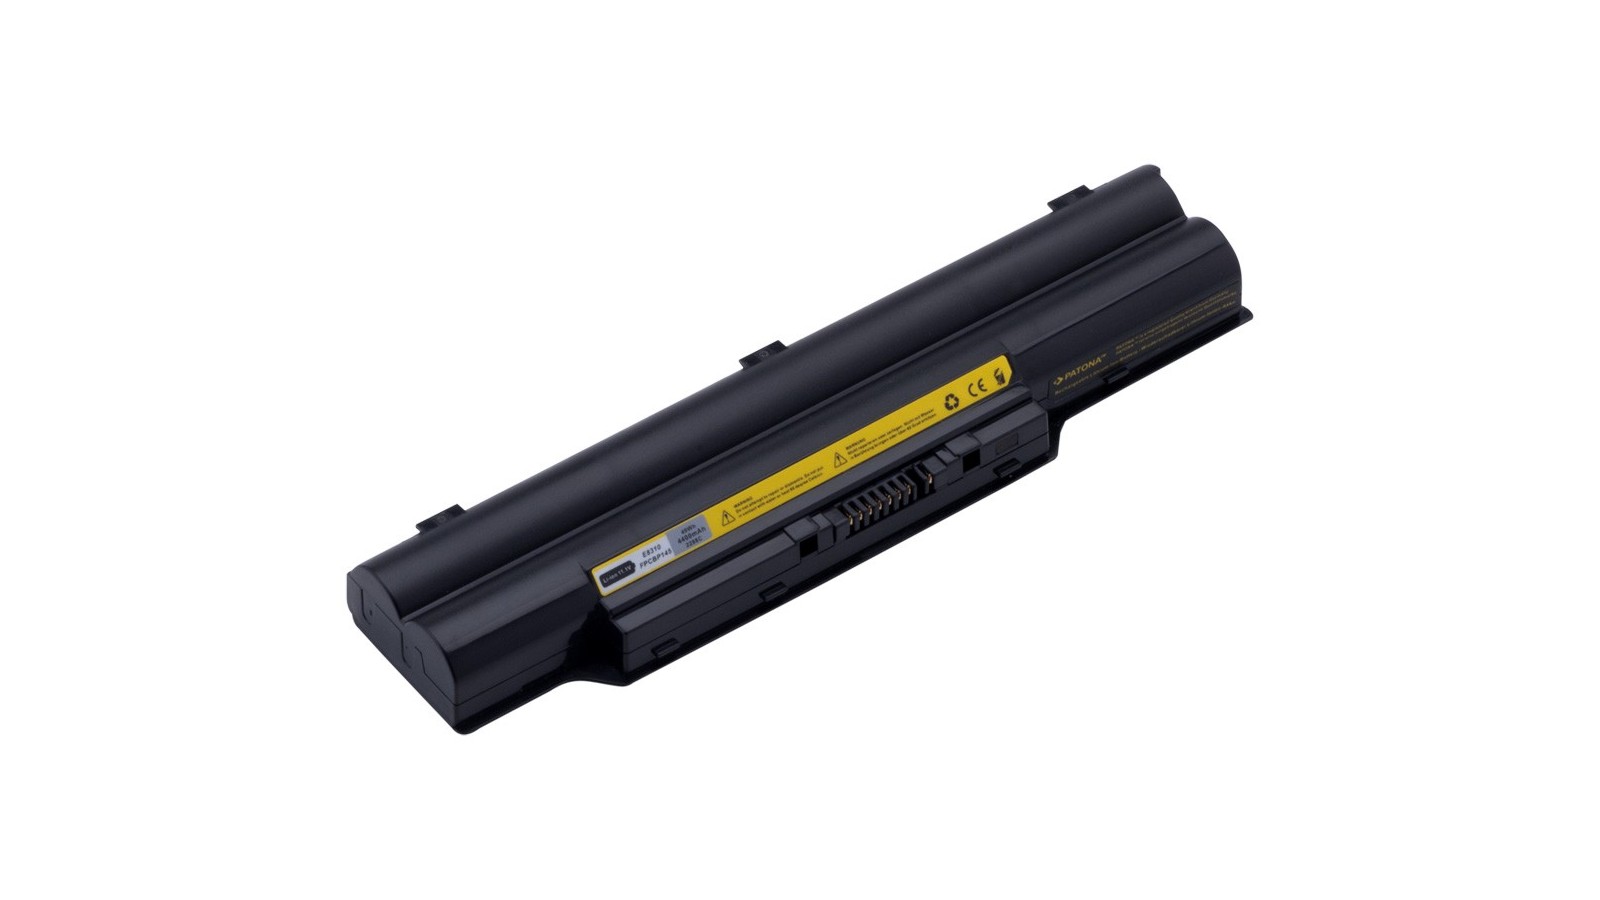 Batteria compatibile con Fujitsu Siemens Lifebook E8310 L1010 LH700 P770 P8110 S2210 S6310 S6311